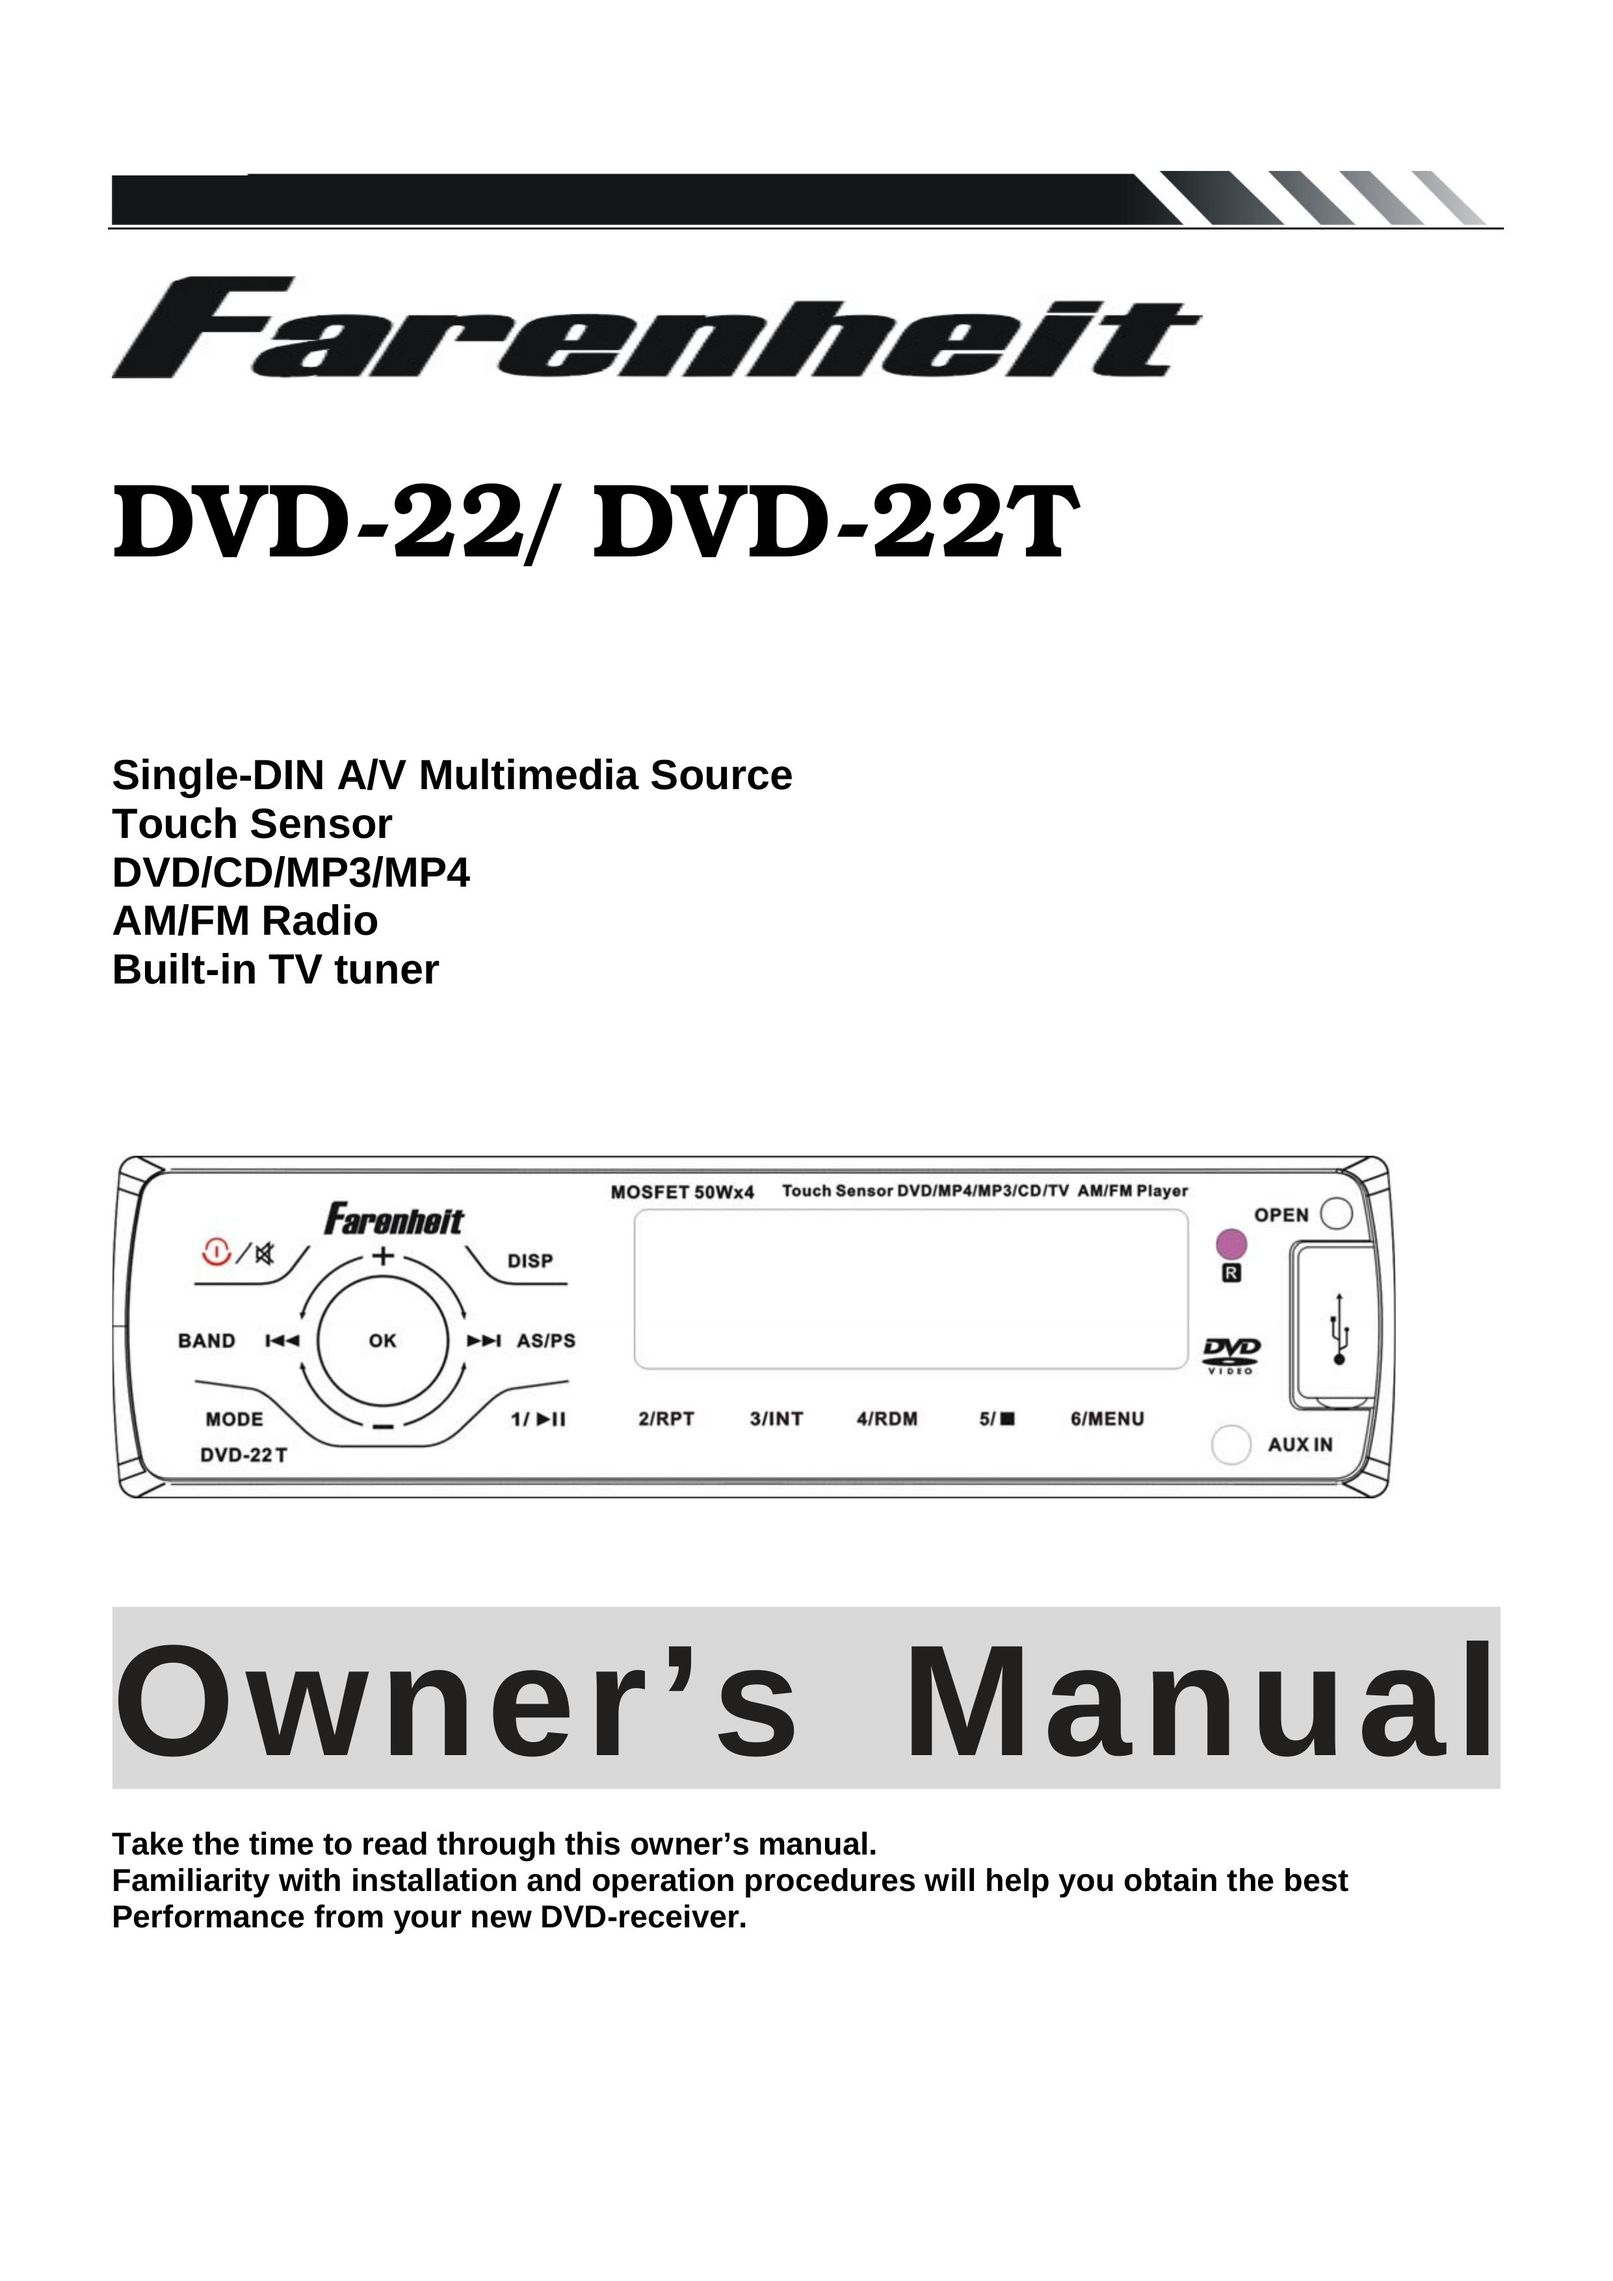 Farenheit Technologies DVD-22T DVD Player User Manual